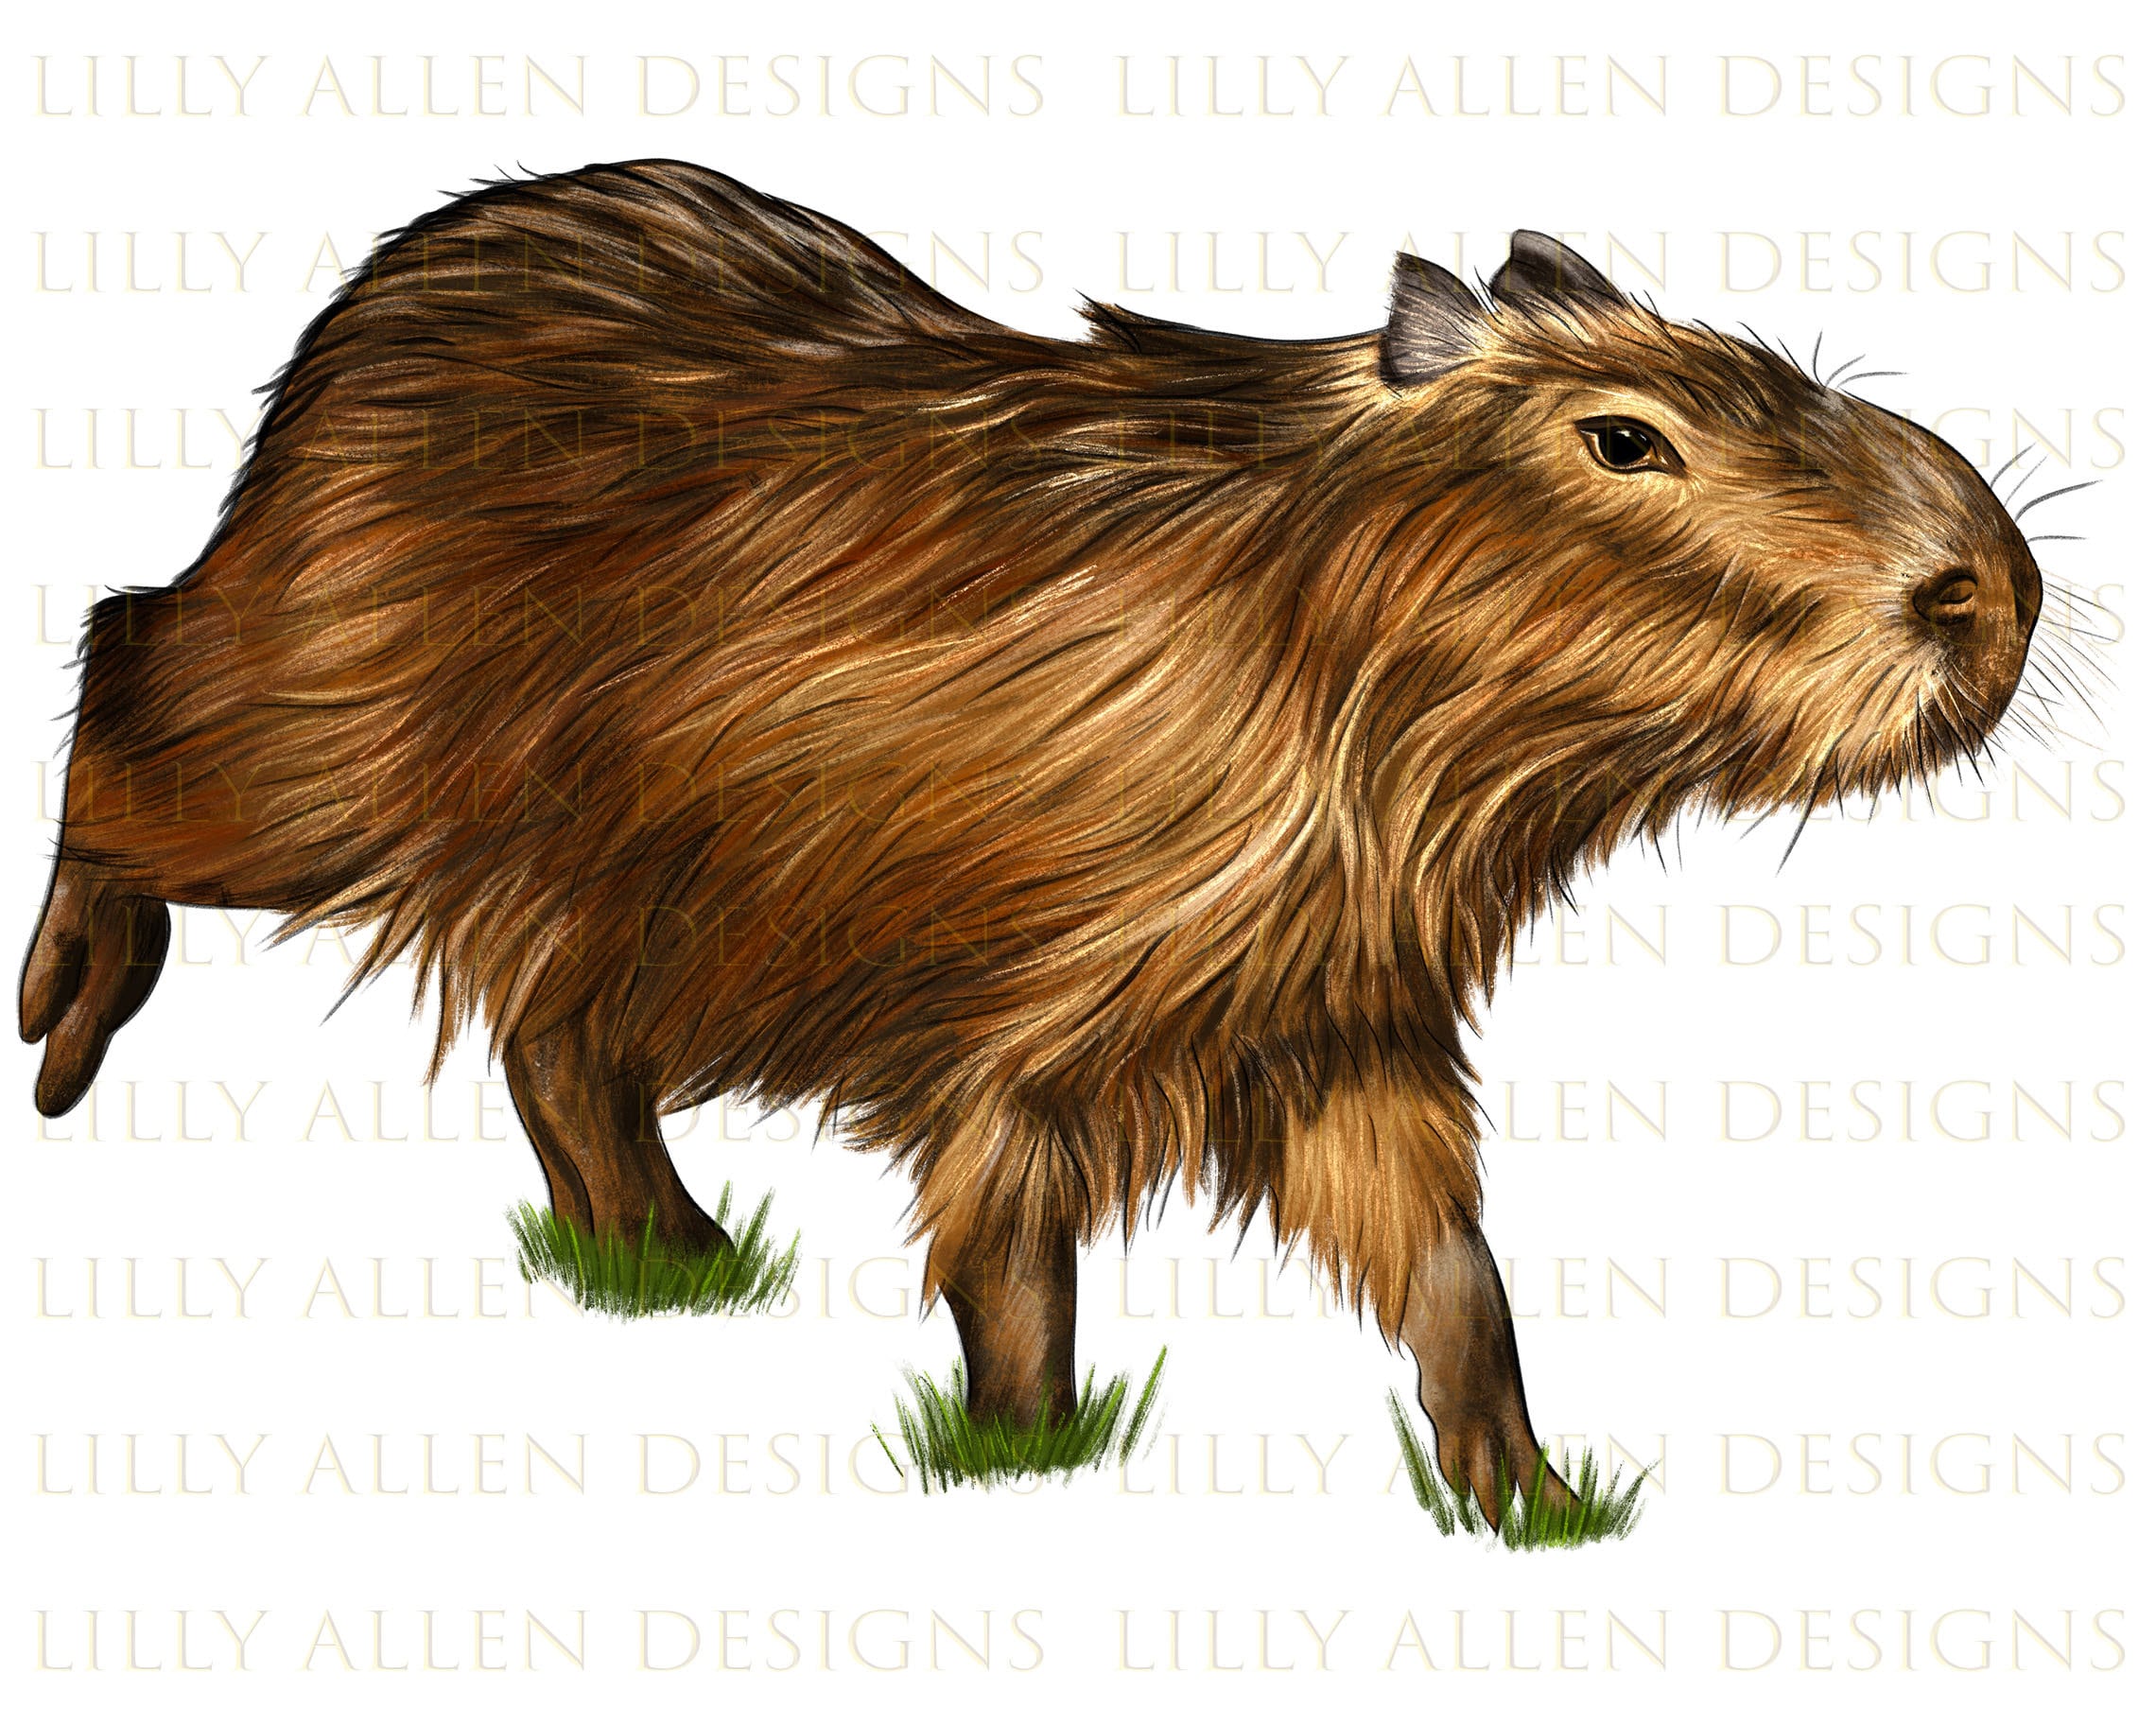 Capybara Illustrationen Png Digital Download, Capybara Sublimation Png,  druckbares Capybara Png Bild für Wandkunst, Dekoration, Basteln, Decoupage  - .de